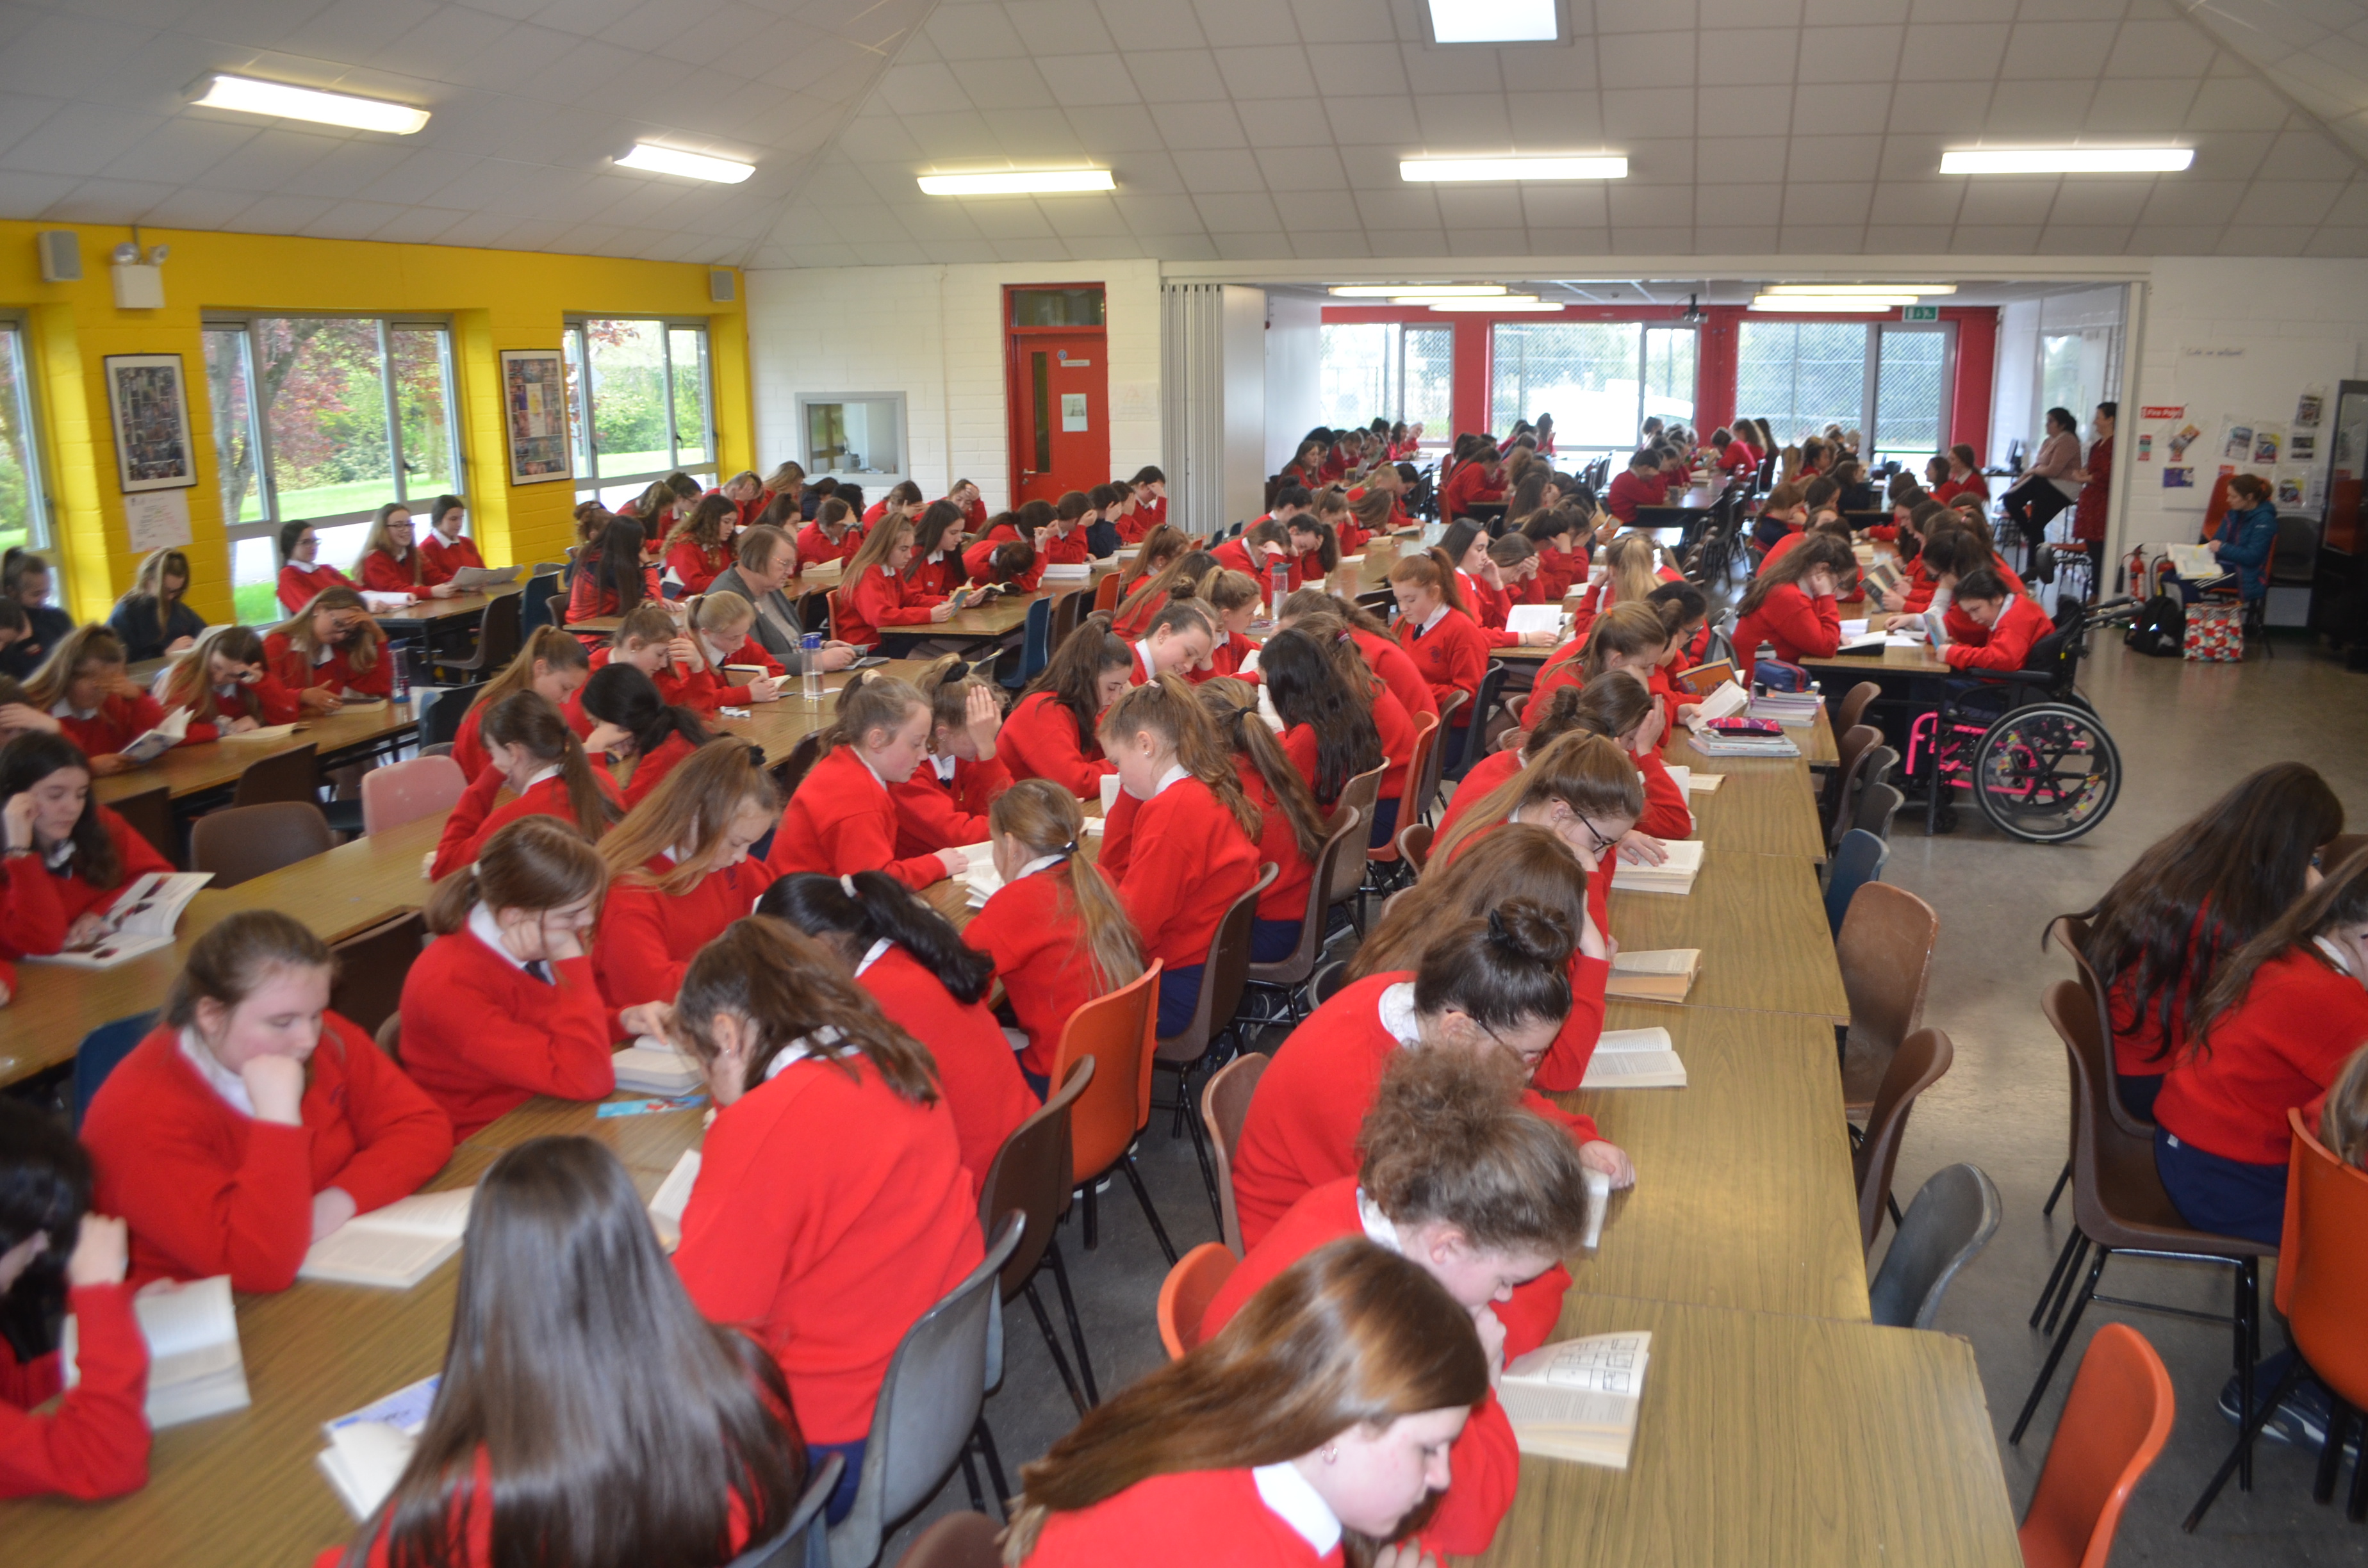 Written Answers. - Clonmel (Tipperary) School. Dil ireann (26th 